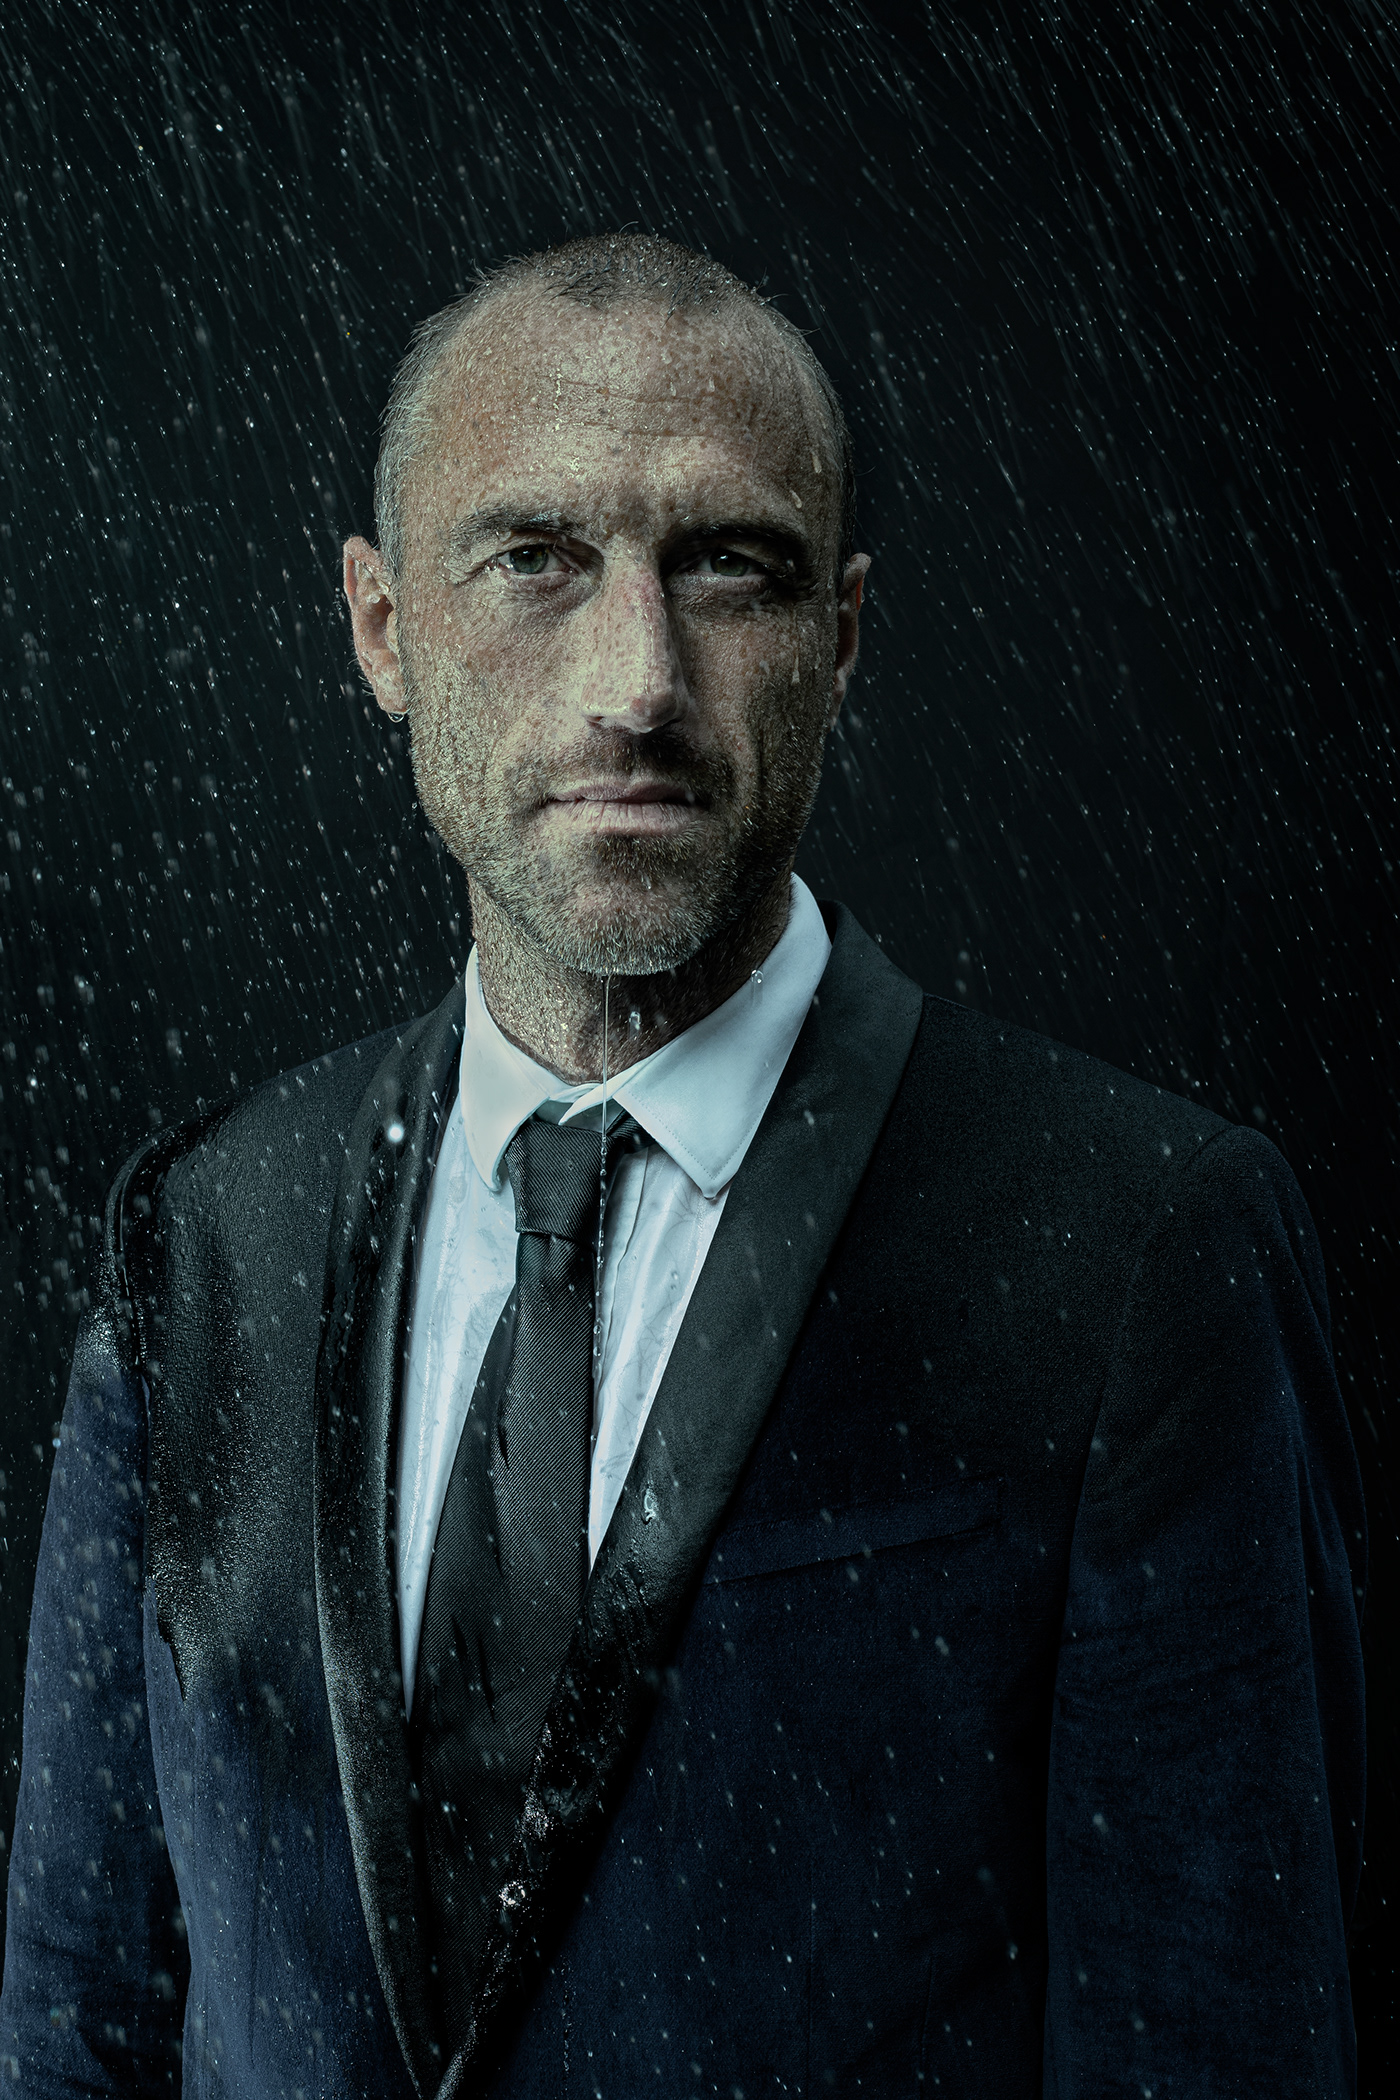 Canon Fashion  man photoshoot portrait profoto rain suit water